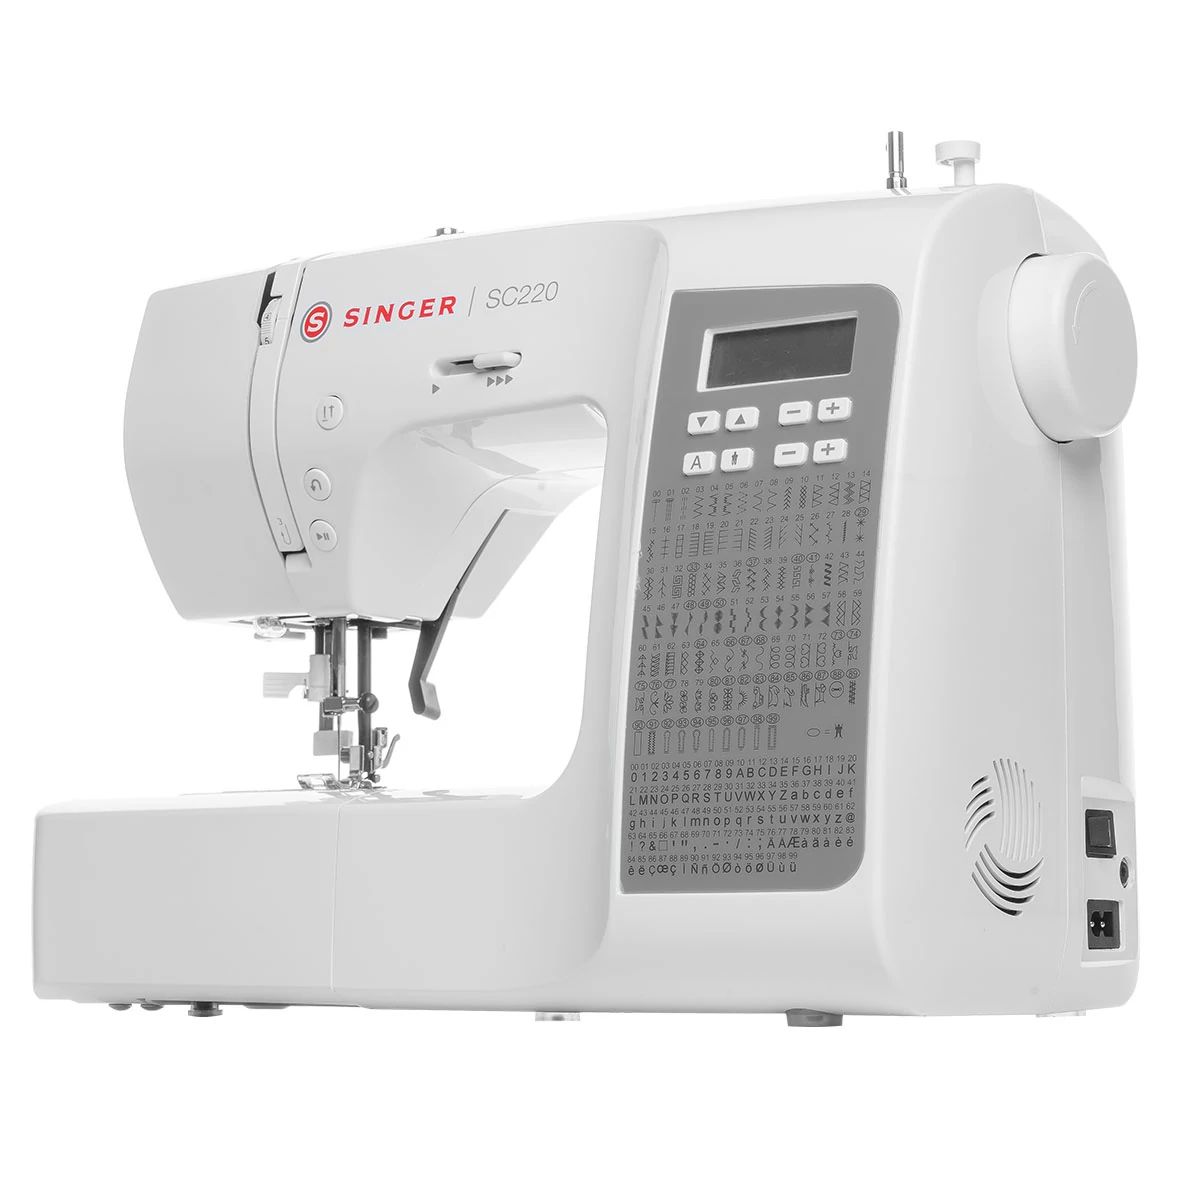 SC220 Sewing Machine